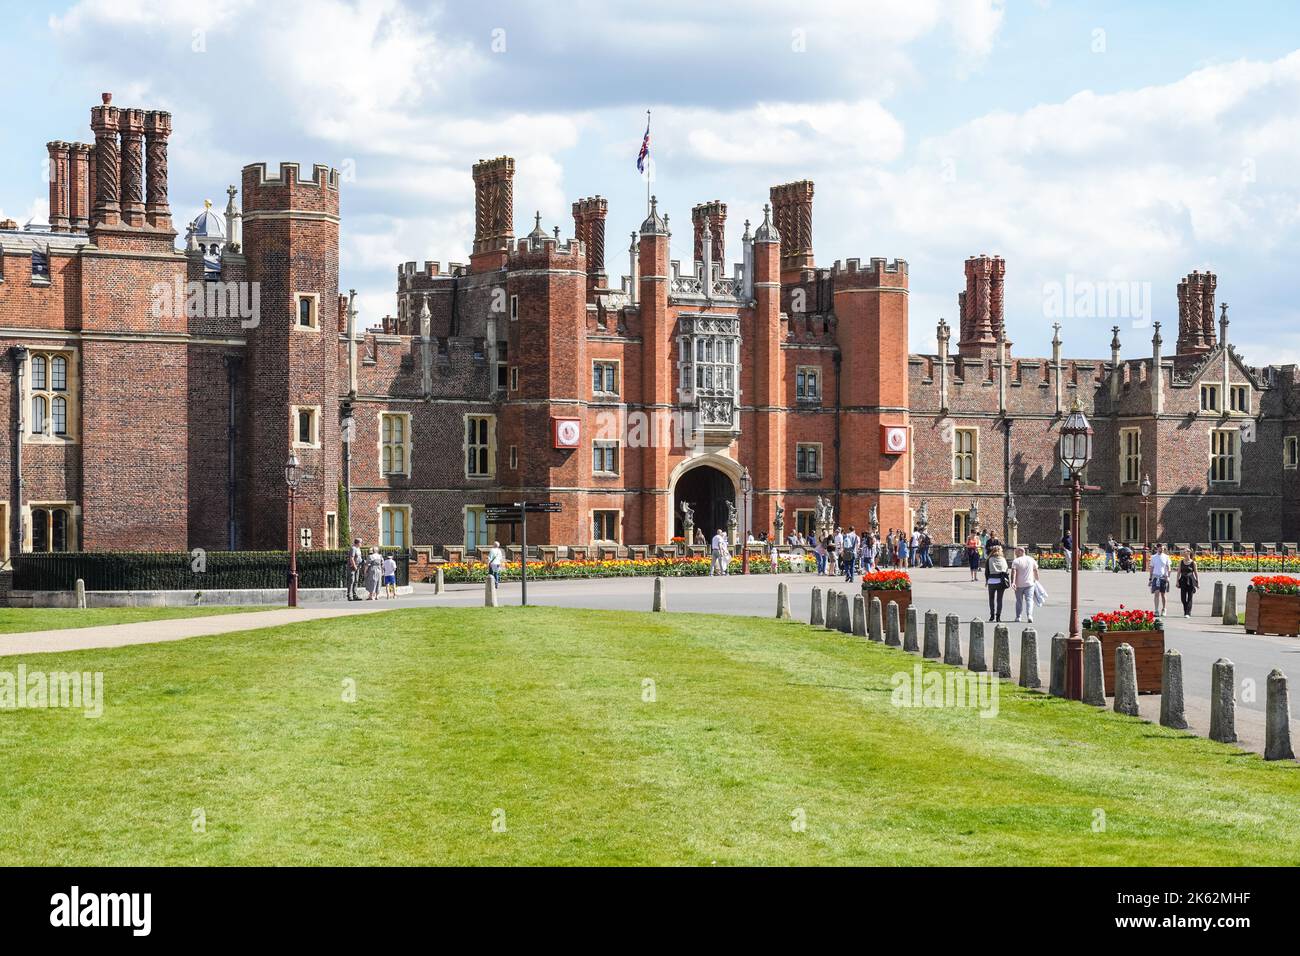 Entrée principale du palais de Hampton court, du grand palais de la ville de Tudor, Richmond upon Thames, Londres, Angleterre Royaume-Uni Banque D'Images